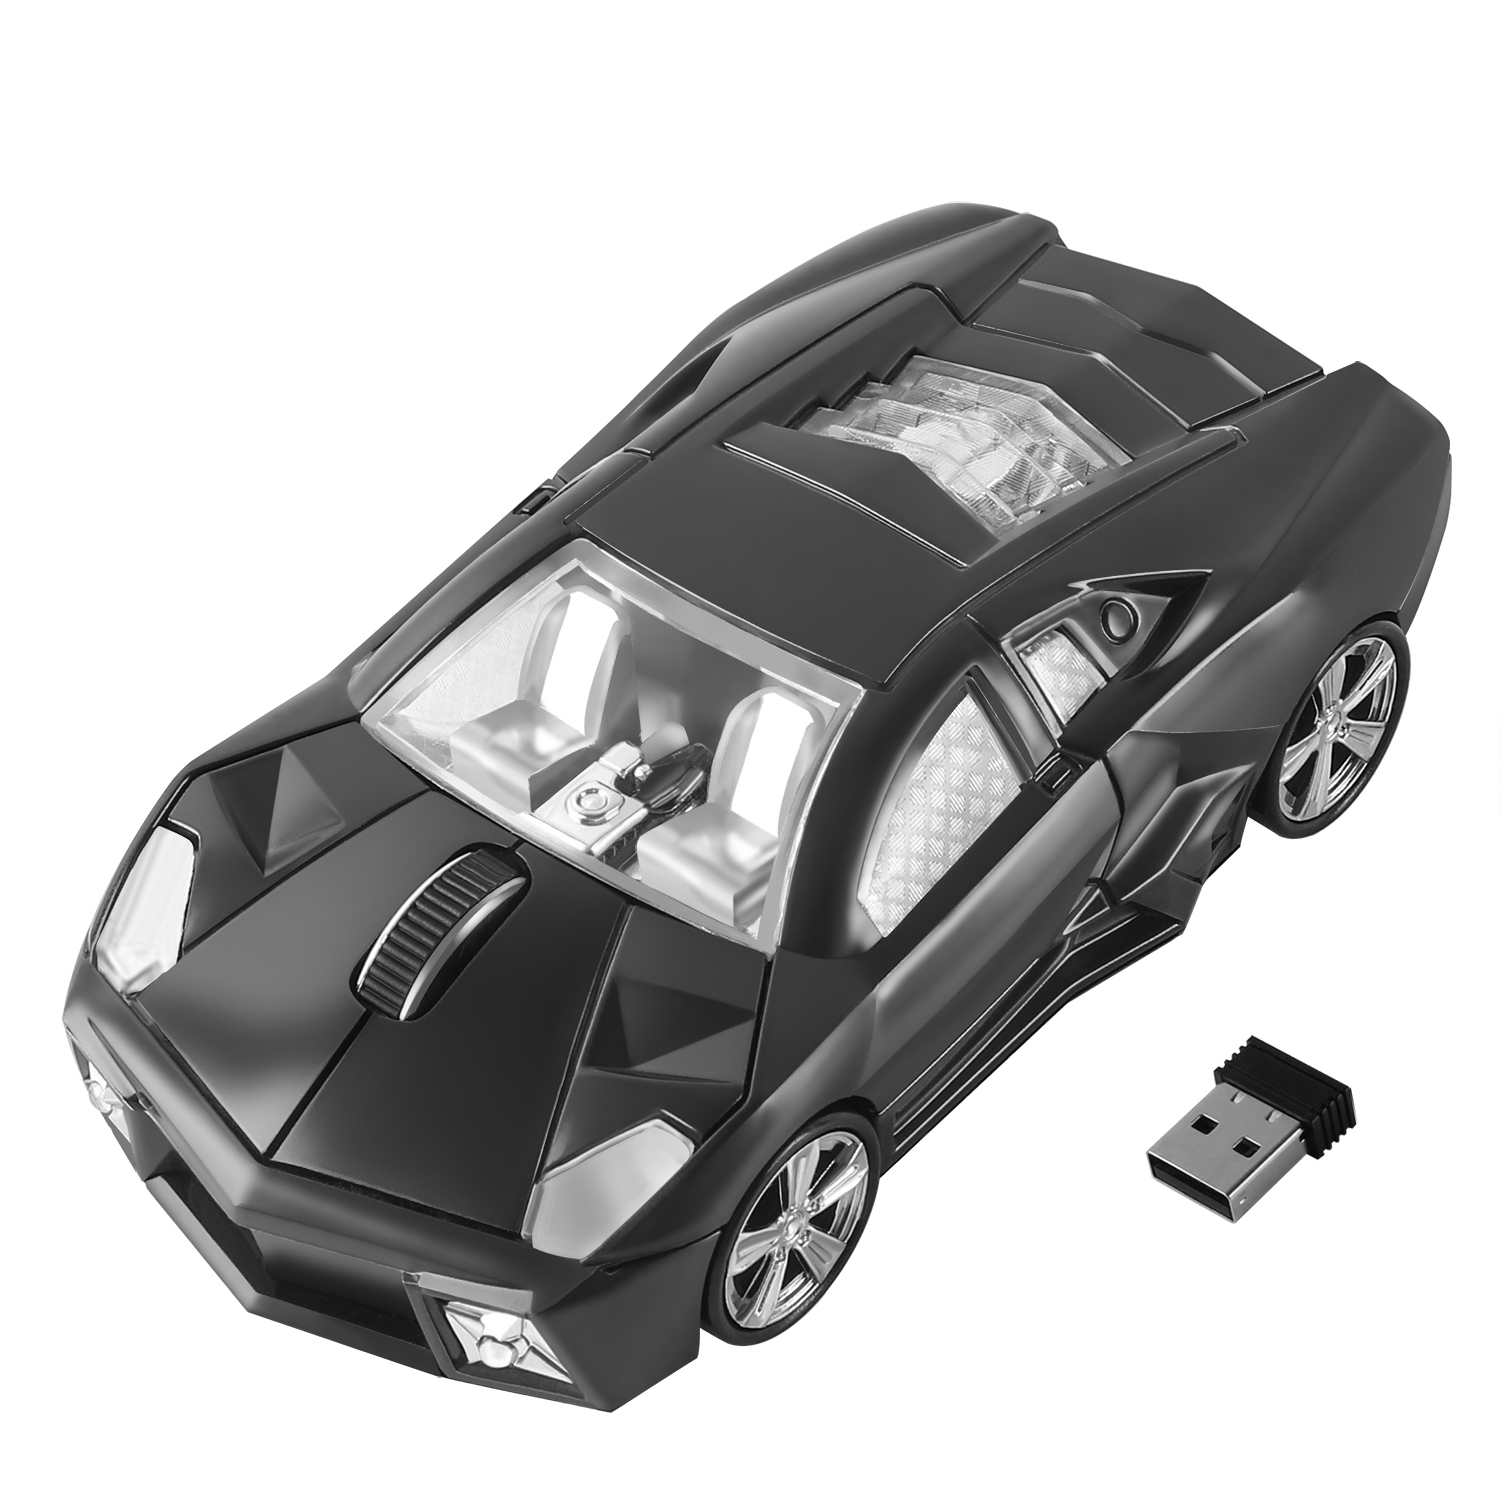 2-4G-trådløs-mus-ergonomisk-sportsbildesign-spill-Mause-1600-DPI-USB-optisk-barnegave (9)